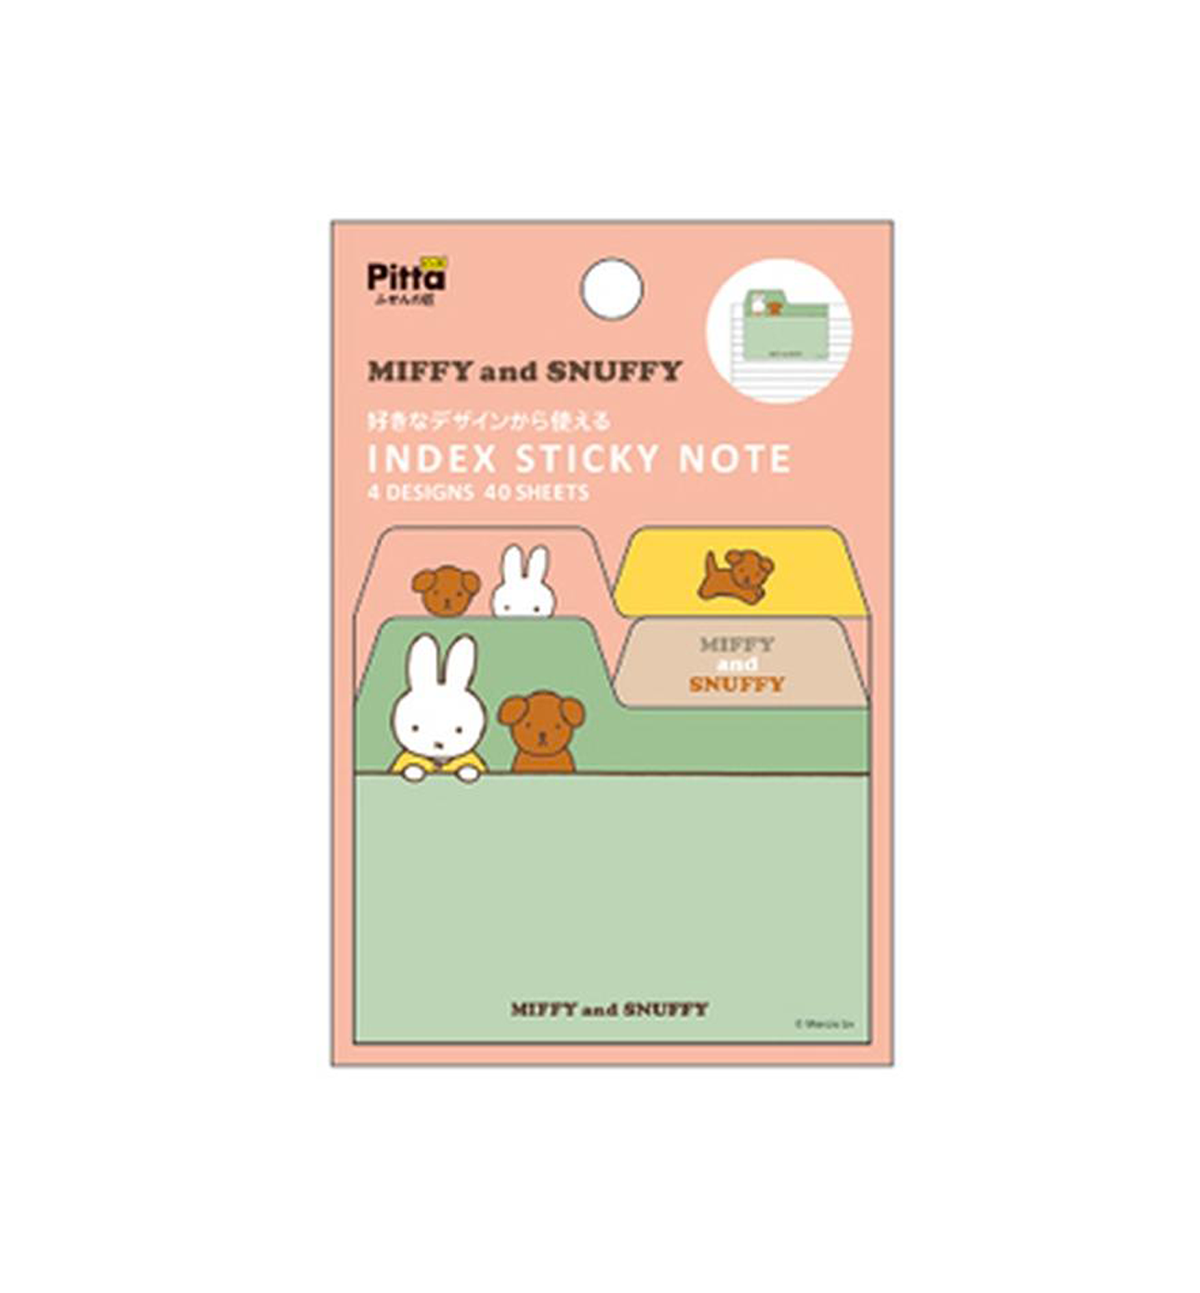 Miffy & Snuffy Index Sticky Note